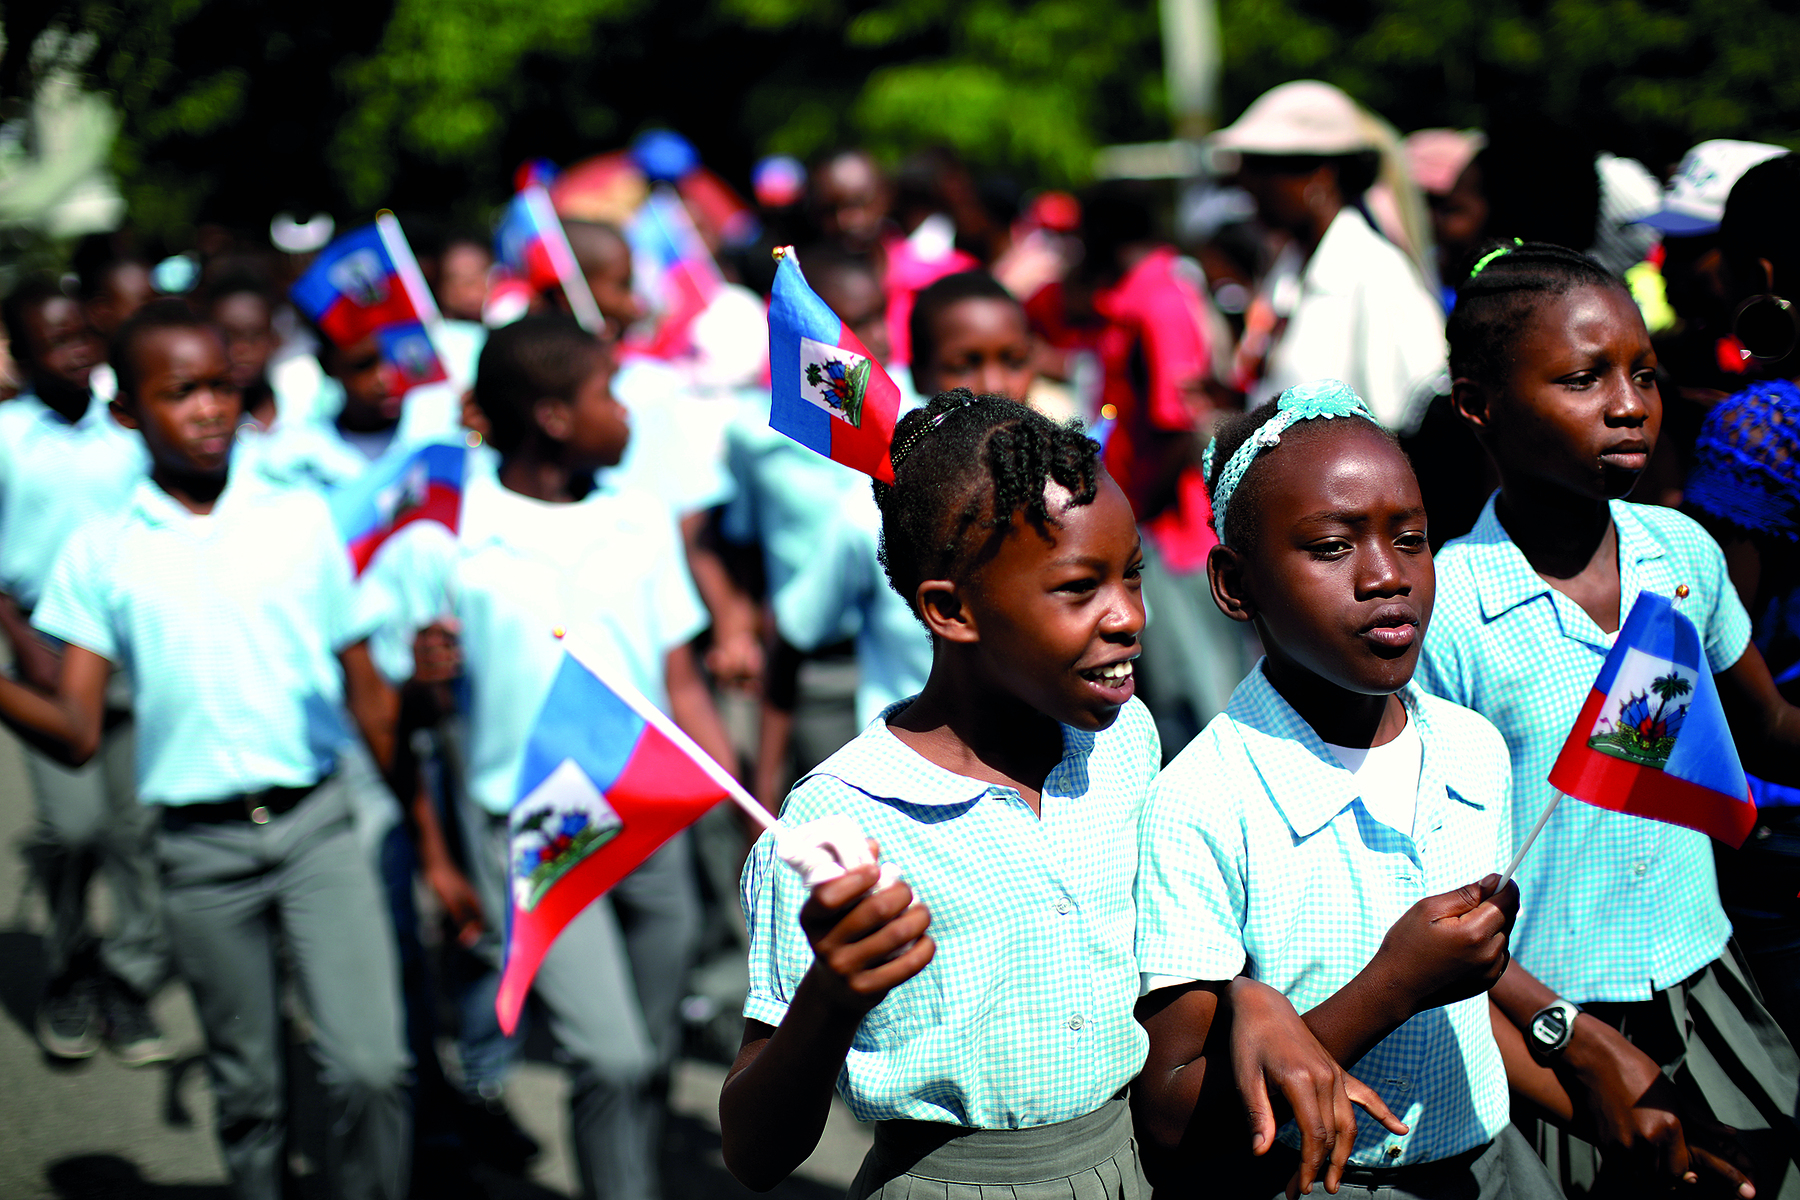 Fotografia. Dezenas de crianças em um desfile em uma rua, meninos e meninas negros de cabelos escuros, as meninas com os cabelos presos em tranças. Meninos e meninas com camisa de mangas curtas na cor azul clara, as meninas de saia de pregas de cor cinza e os meninos de calça cinza. 
À frente, três meninas juntas, duas delas de braços dados, vistas da cintura para cima. Duas delas, à esquerda, segurando pequenas bandeiras do Haiti. A menina à esquerda olha para frente, sorrindo. 
Em segundo plano, o fundo da imagem está desfocado. Há mais crianças com bandeiras e,  mais ao fundo, árvores com folhas verdes.